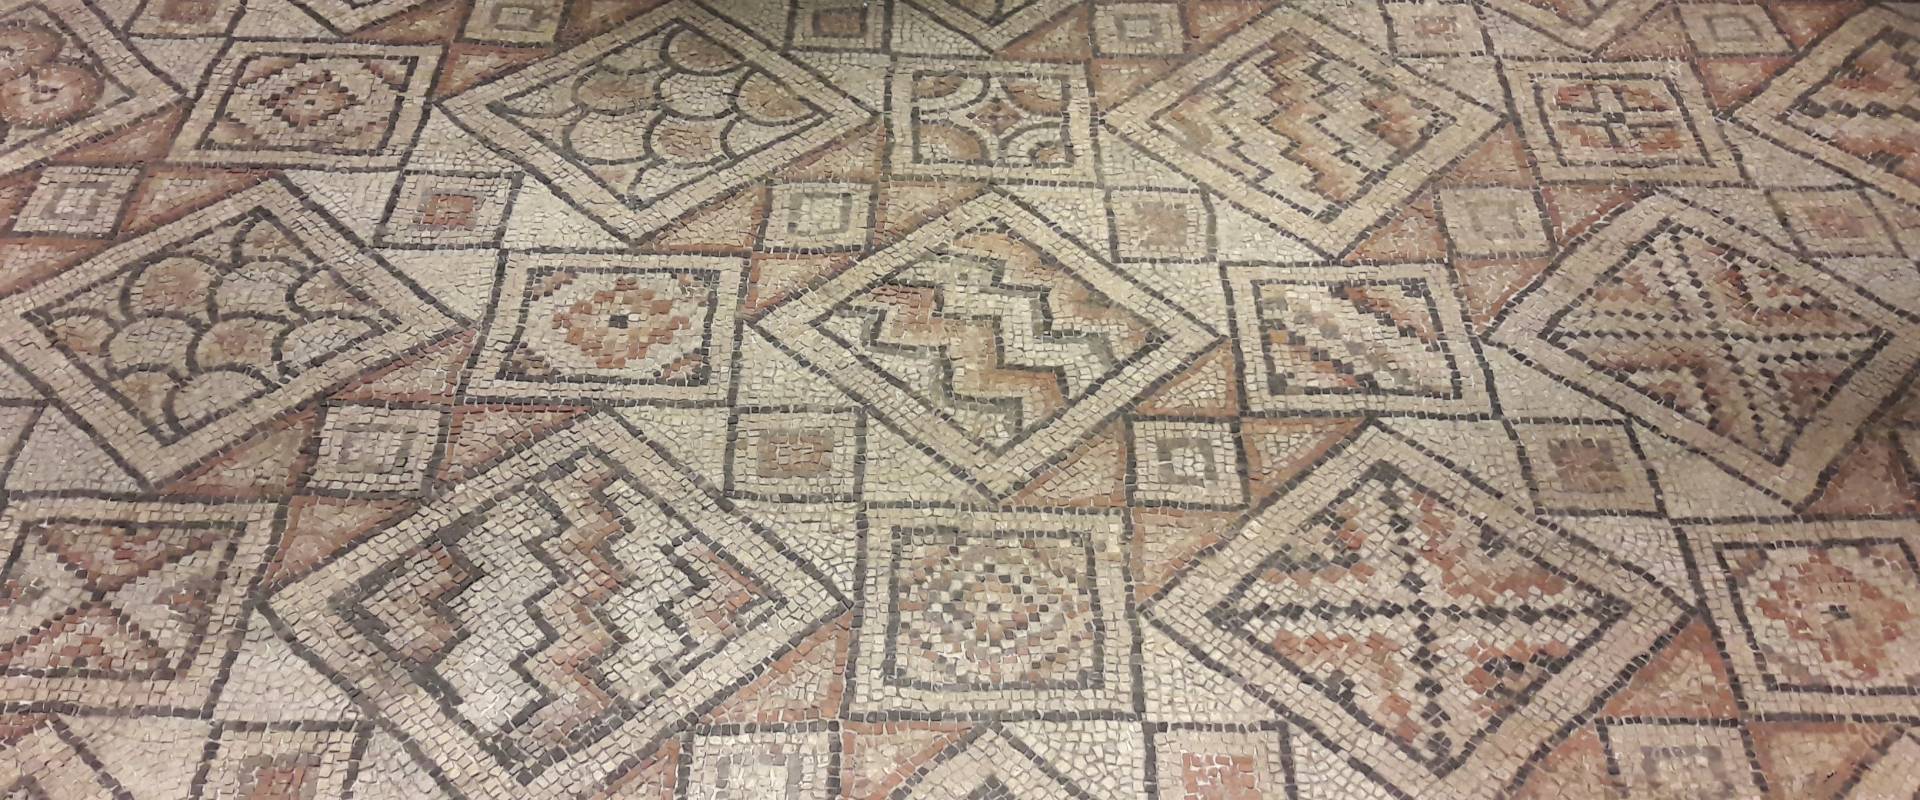 Ravenna - Domus tappeti di pietra - Dettaglio 4 foto di Ysogo